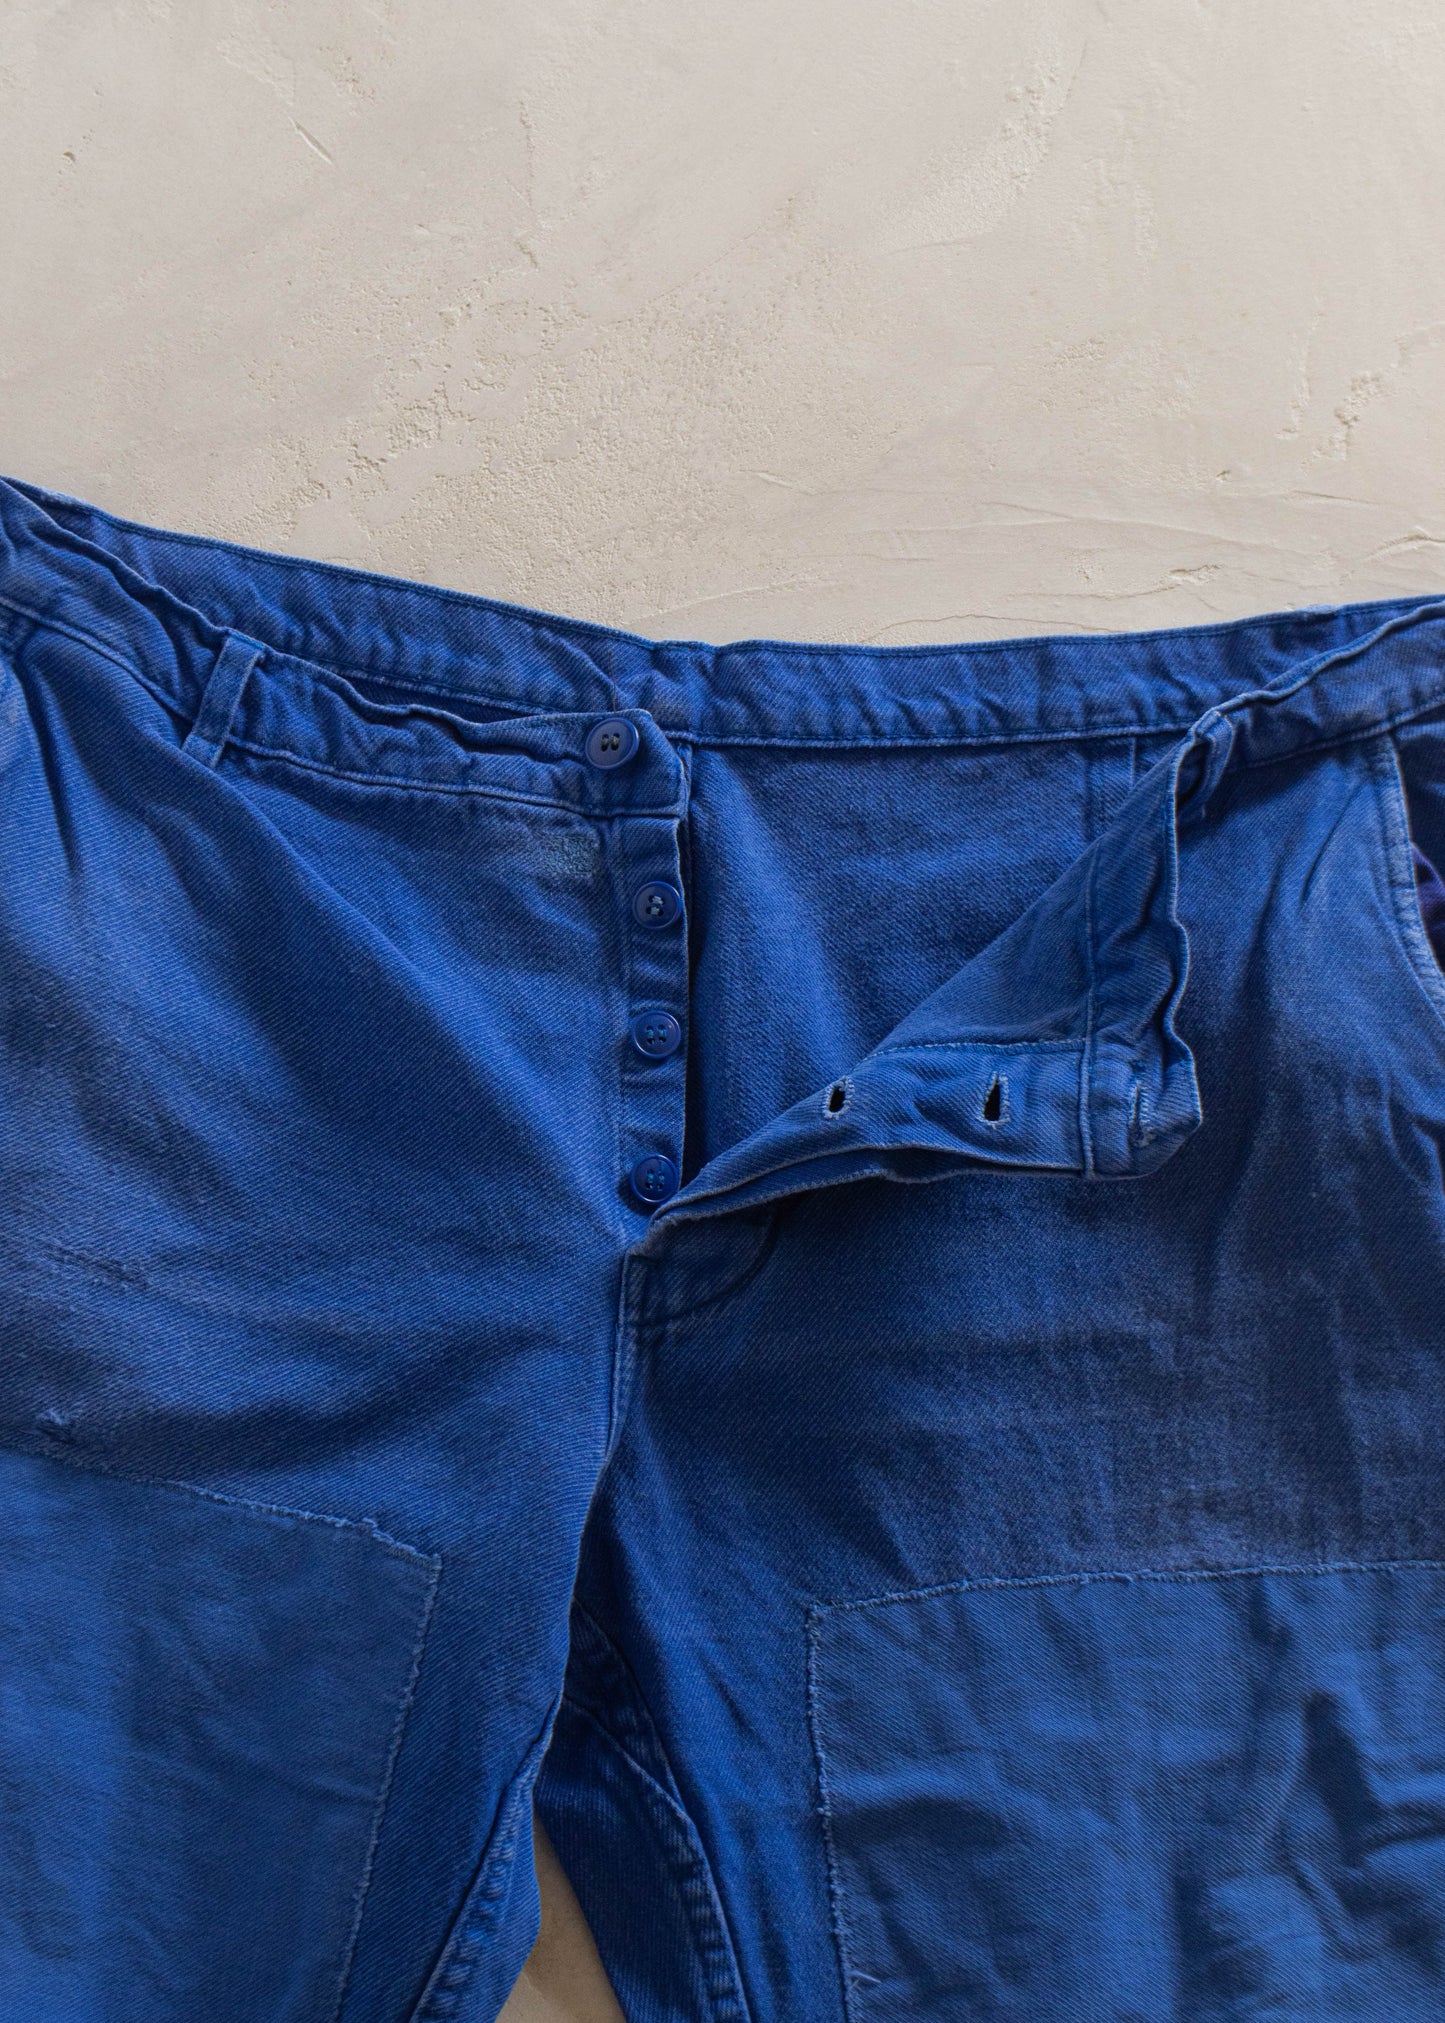 1980s European Workwear Chore Pants Size Women's 40 Men's 42